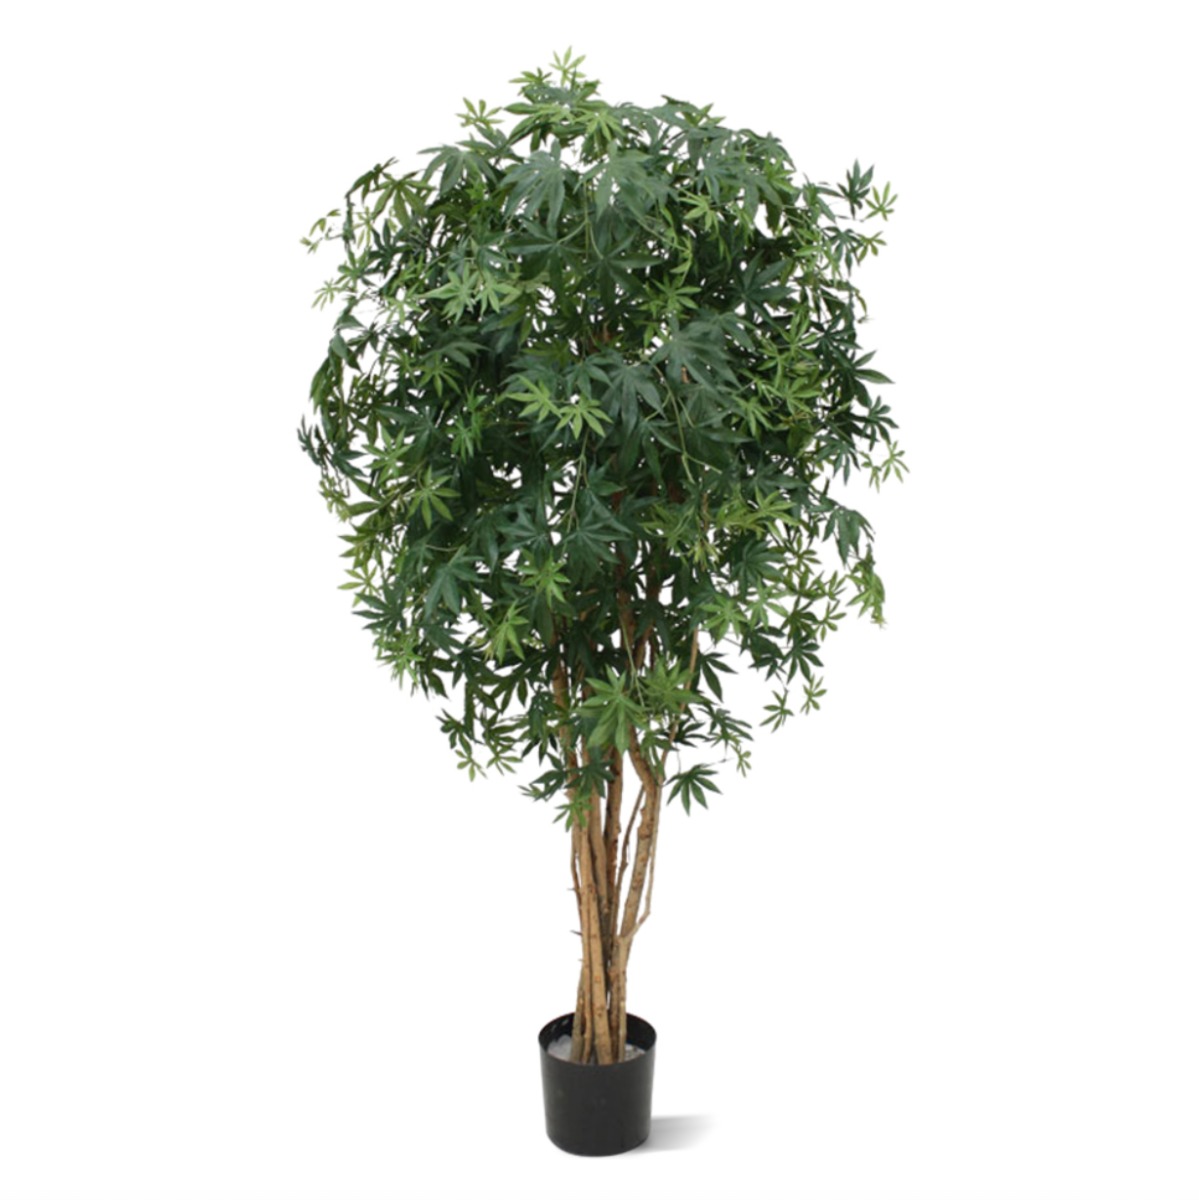 Ahorn Kunstbaum grün 160cm N